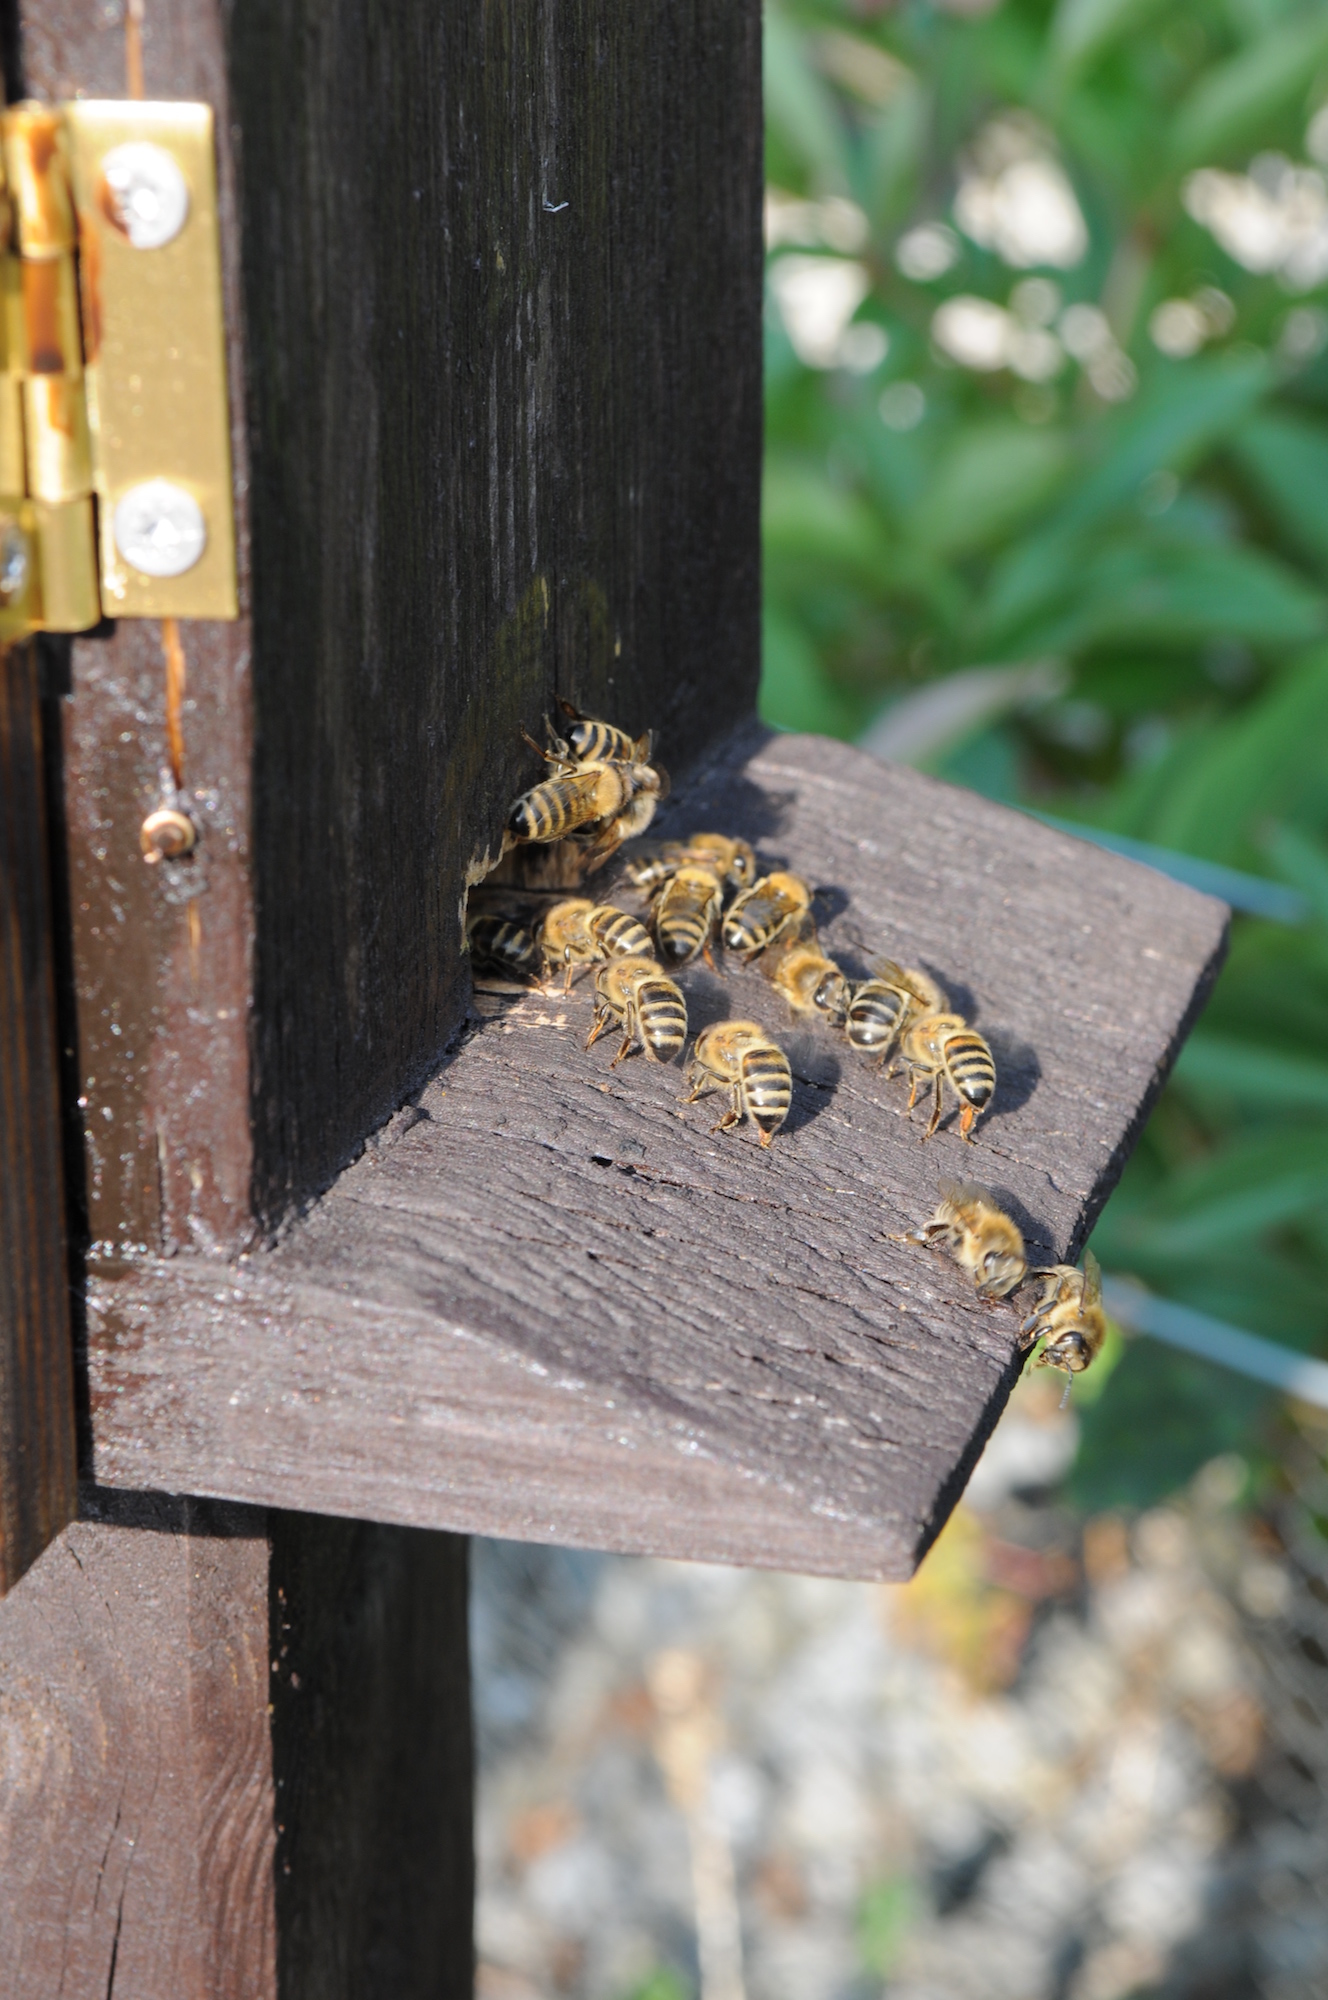 Wie Bienen in einem Stock leben, zeigen diverse Kleingärtenvereine und Imker in mobilen Stöcken. (c) Garnet Manecke